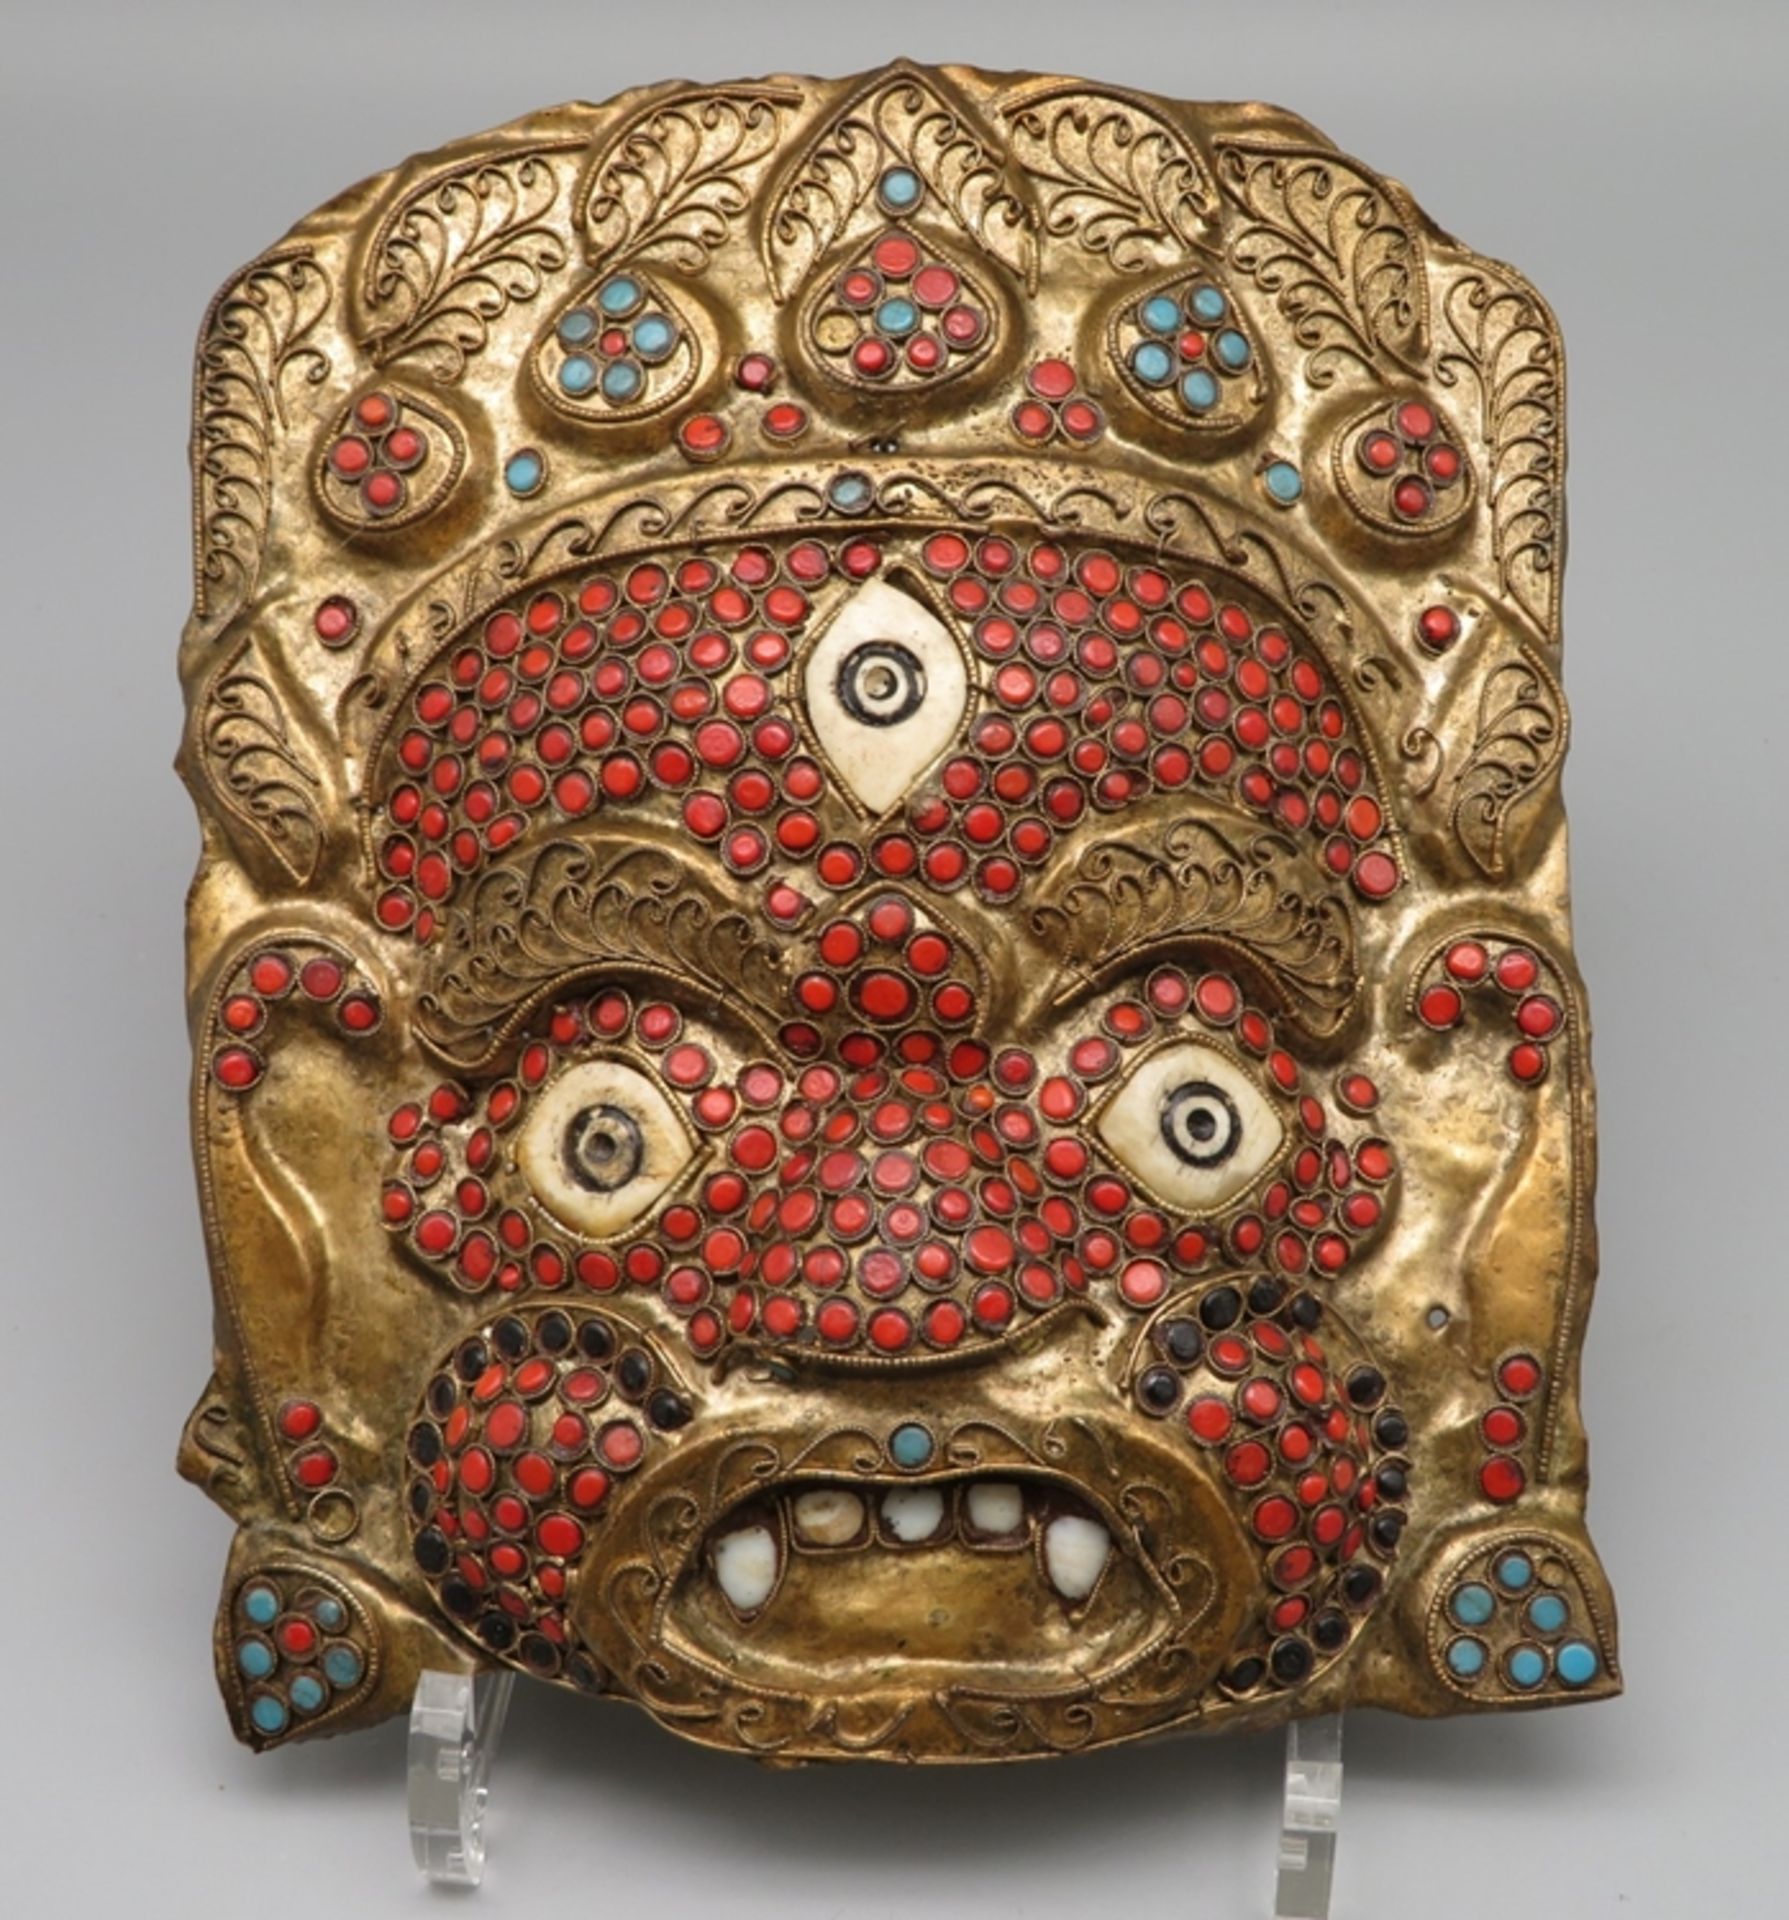 Maske, Tibet/Nepal, Blech besetzt mit Korallen und Türkisen, 20,5 x 17,5 mc.